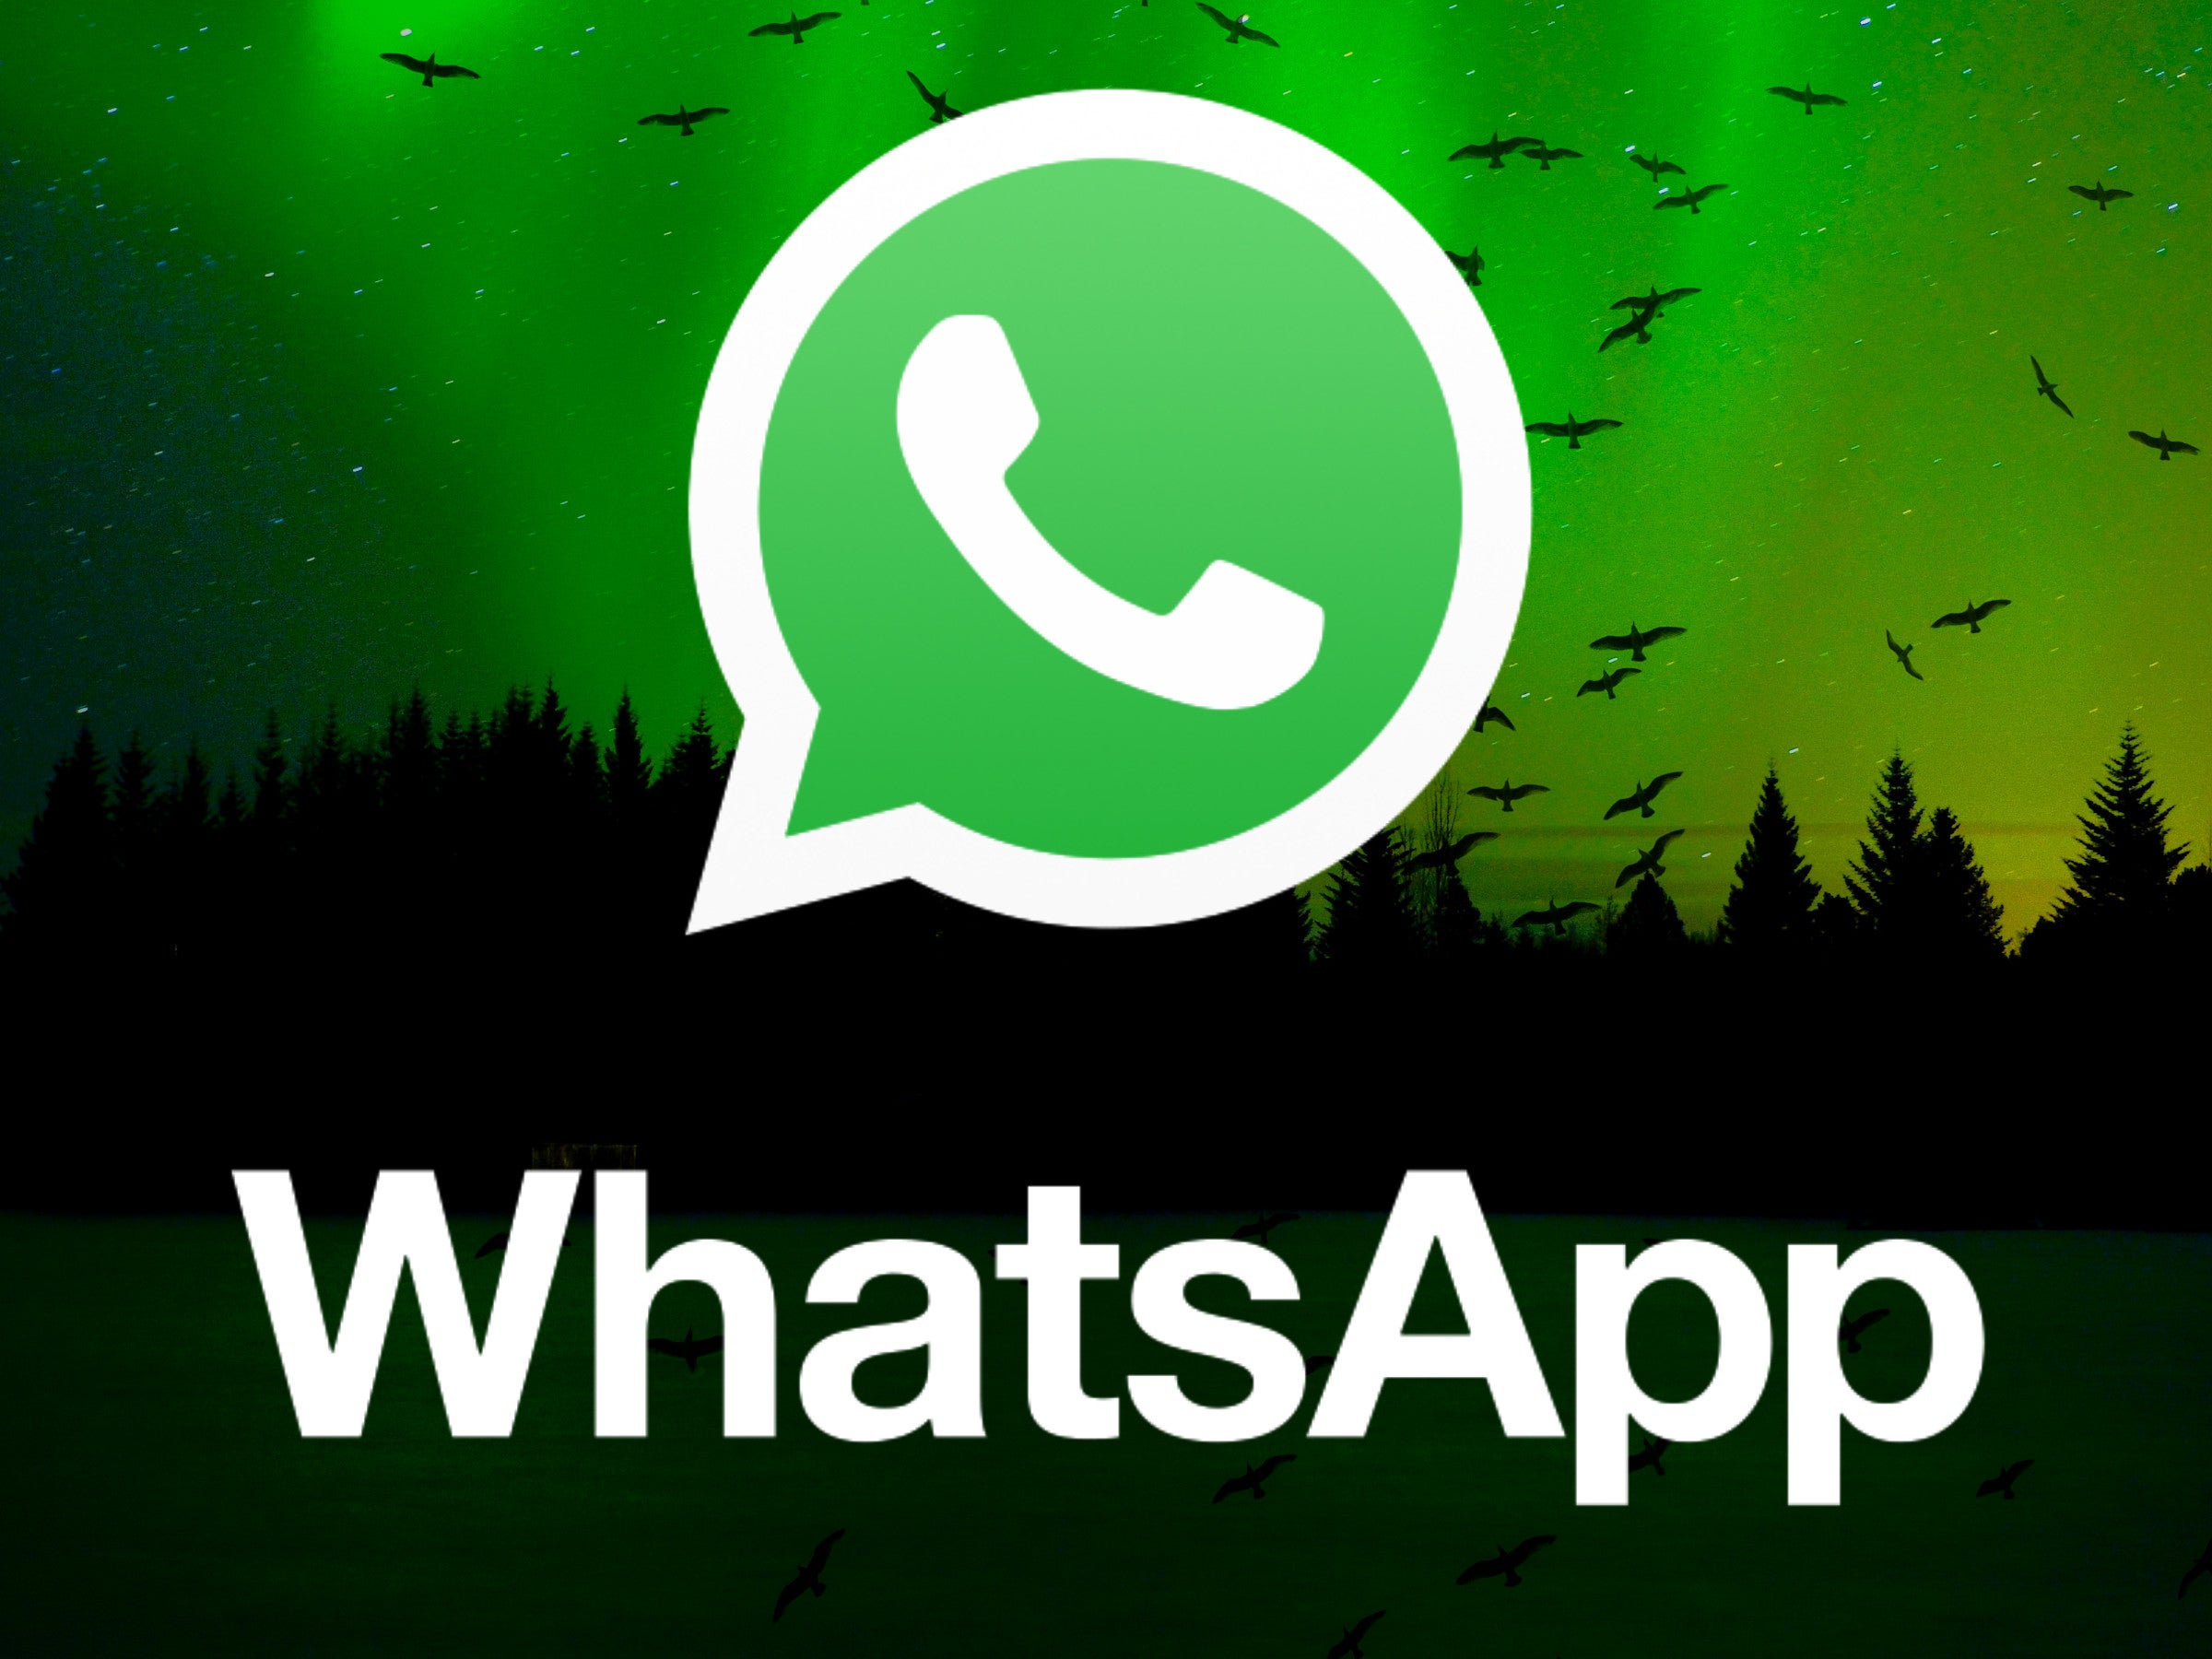 #WhatsApp: Diese beliebte Funktion solltest du besser nicht nutzen